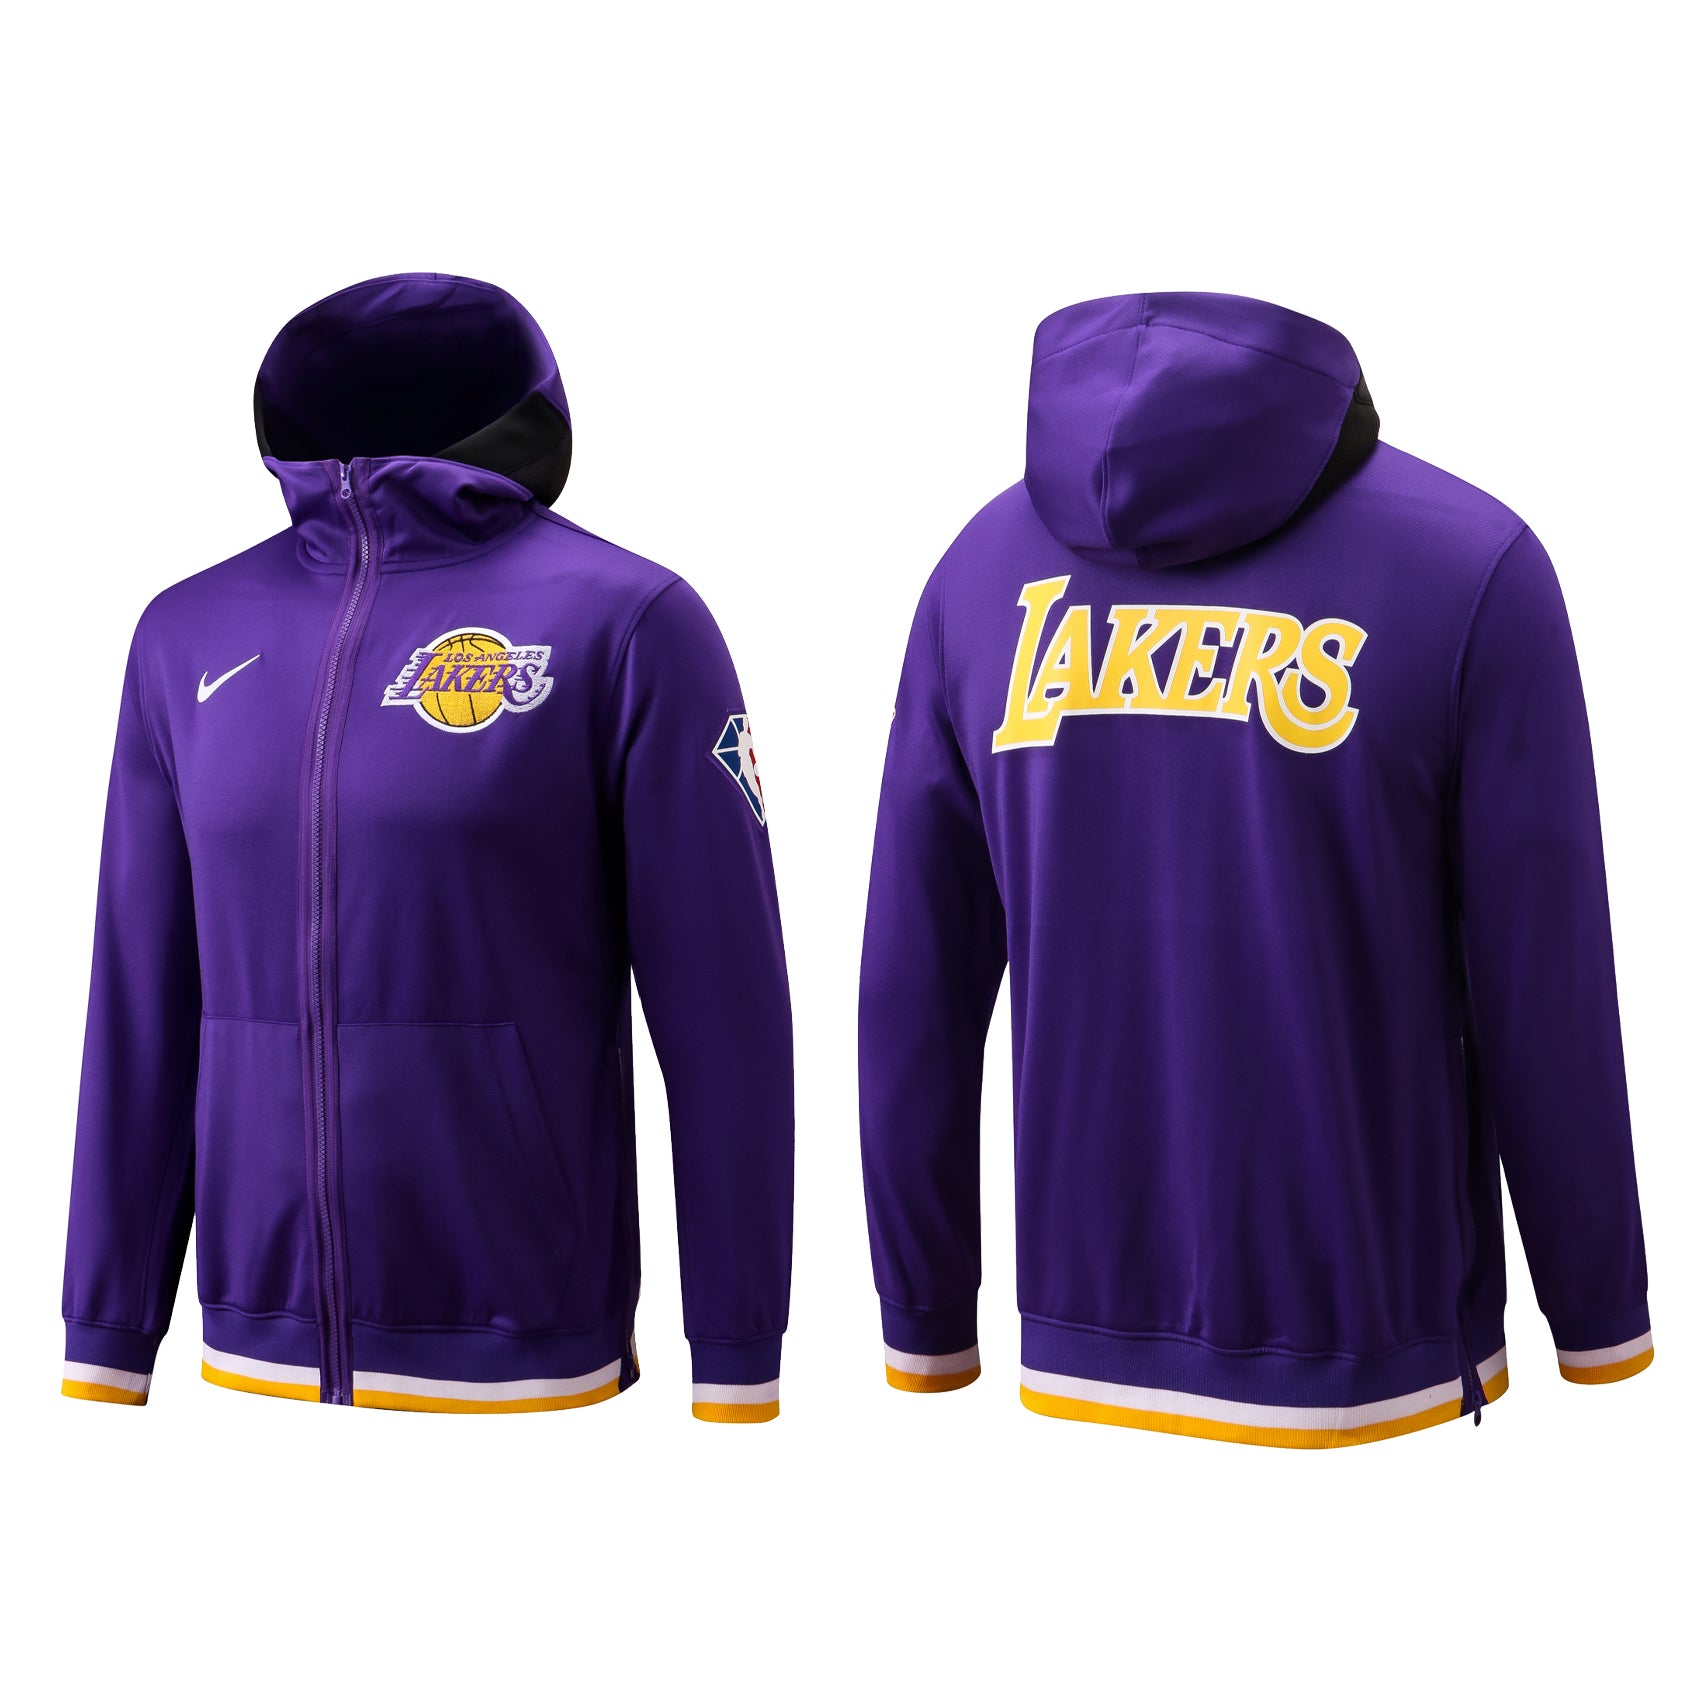 Lakers purple jacket